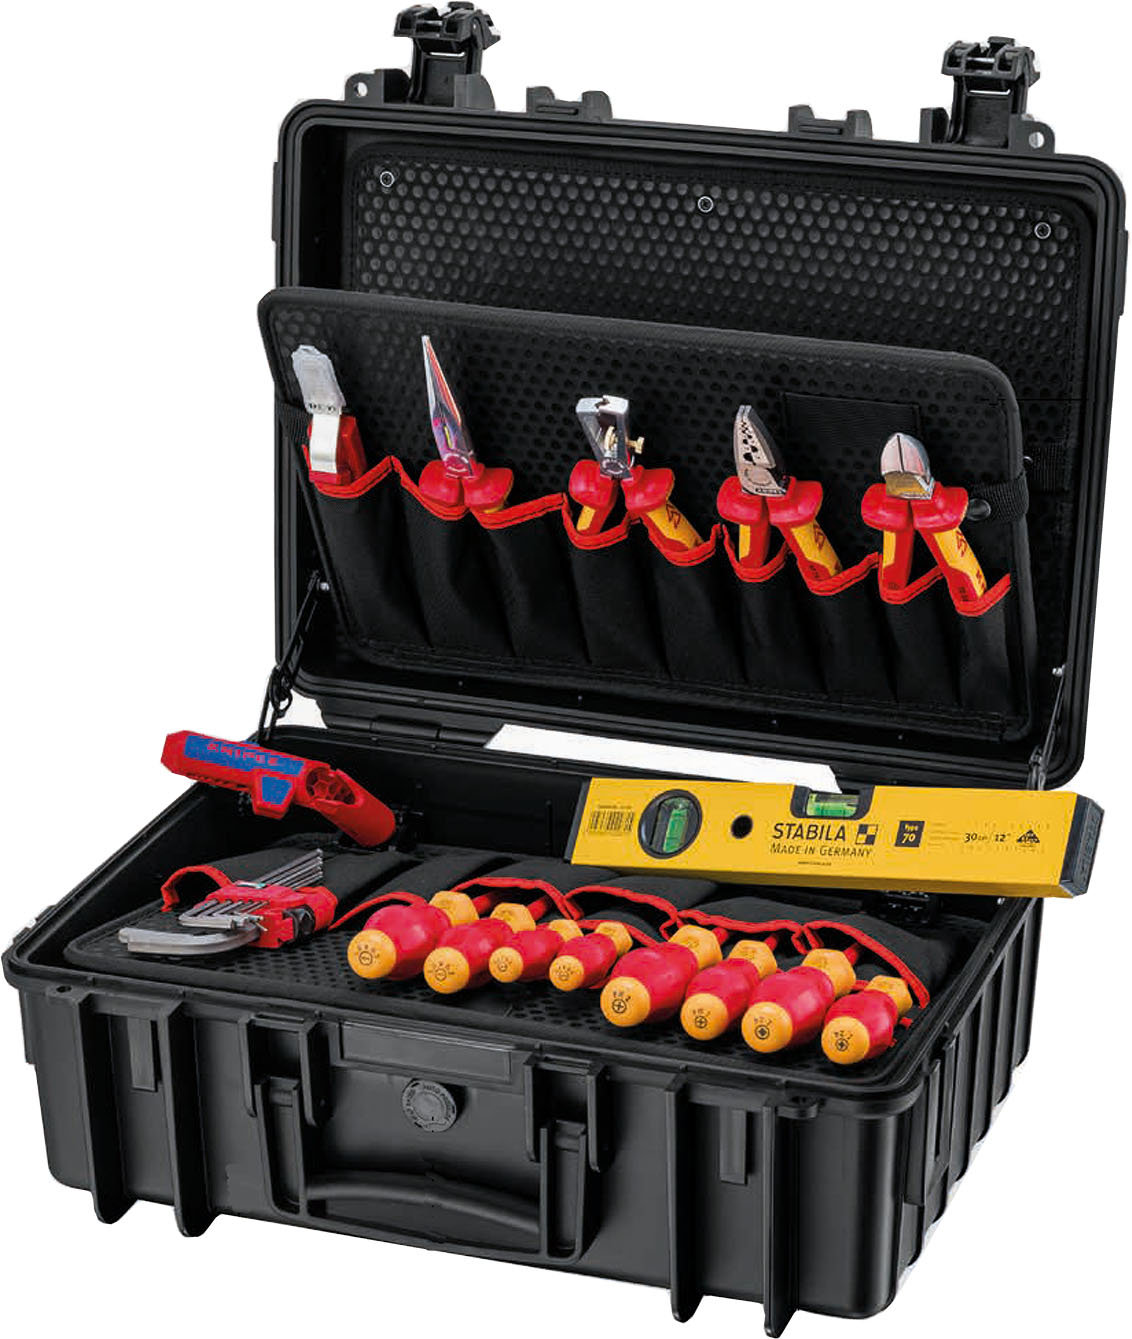 Knipex-Werk Werkzeugkoffer 24-tlg. sw robust23 Start Elekt 00 21 34 HL S2